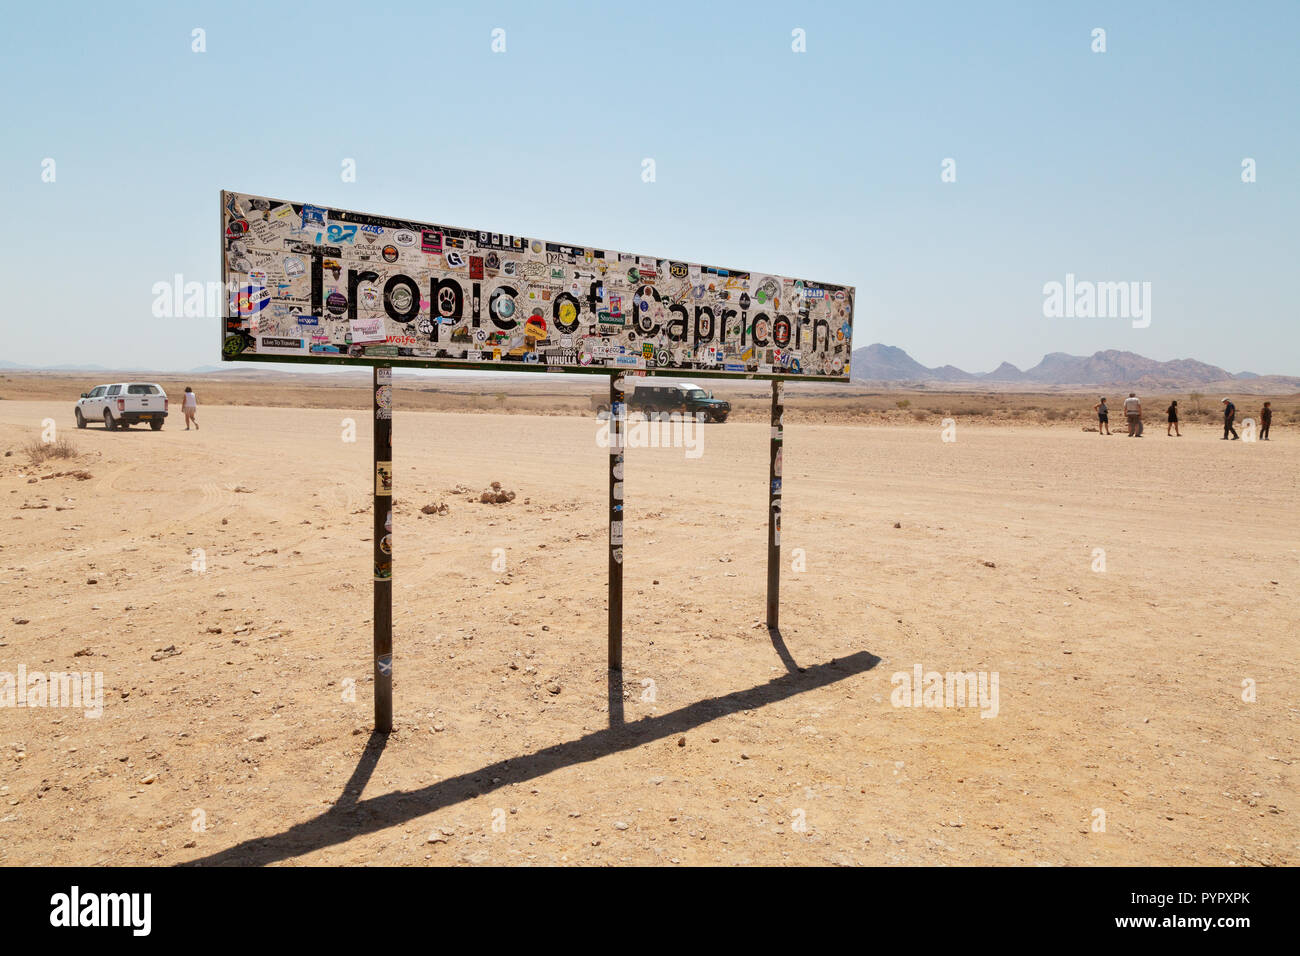 Tropique du Capricorne Namibie - Les touristes à la tropique du Capricorne signe dans le désert du Namib, Namibie, Afrique du Sud Banque D'Images